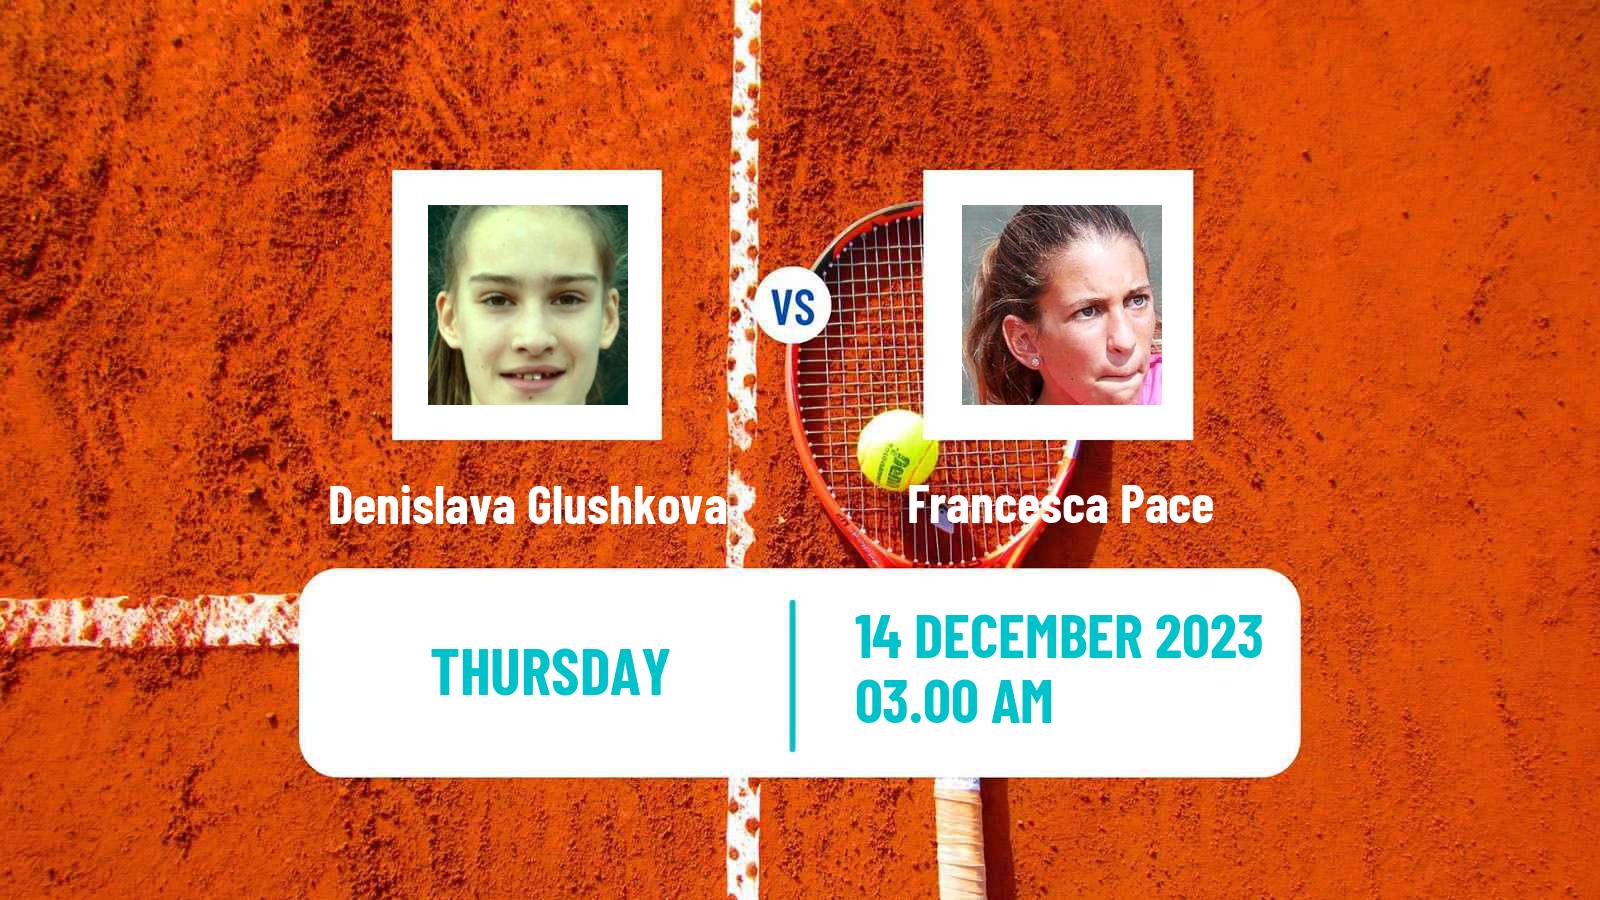 Tennis ITF W15 Antalya 22 Women Denislava Glushkova - Francesca Pace